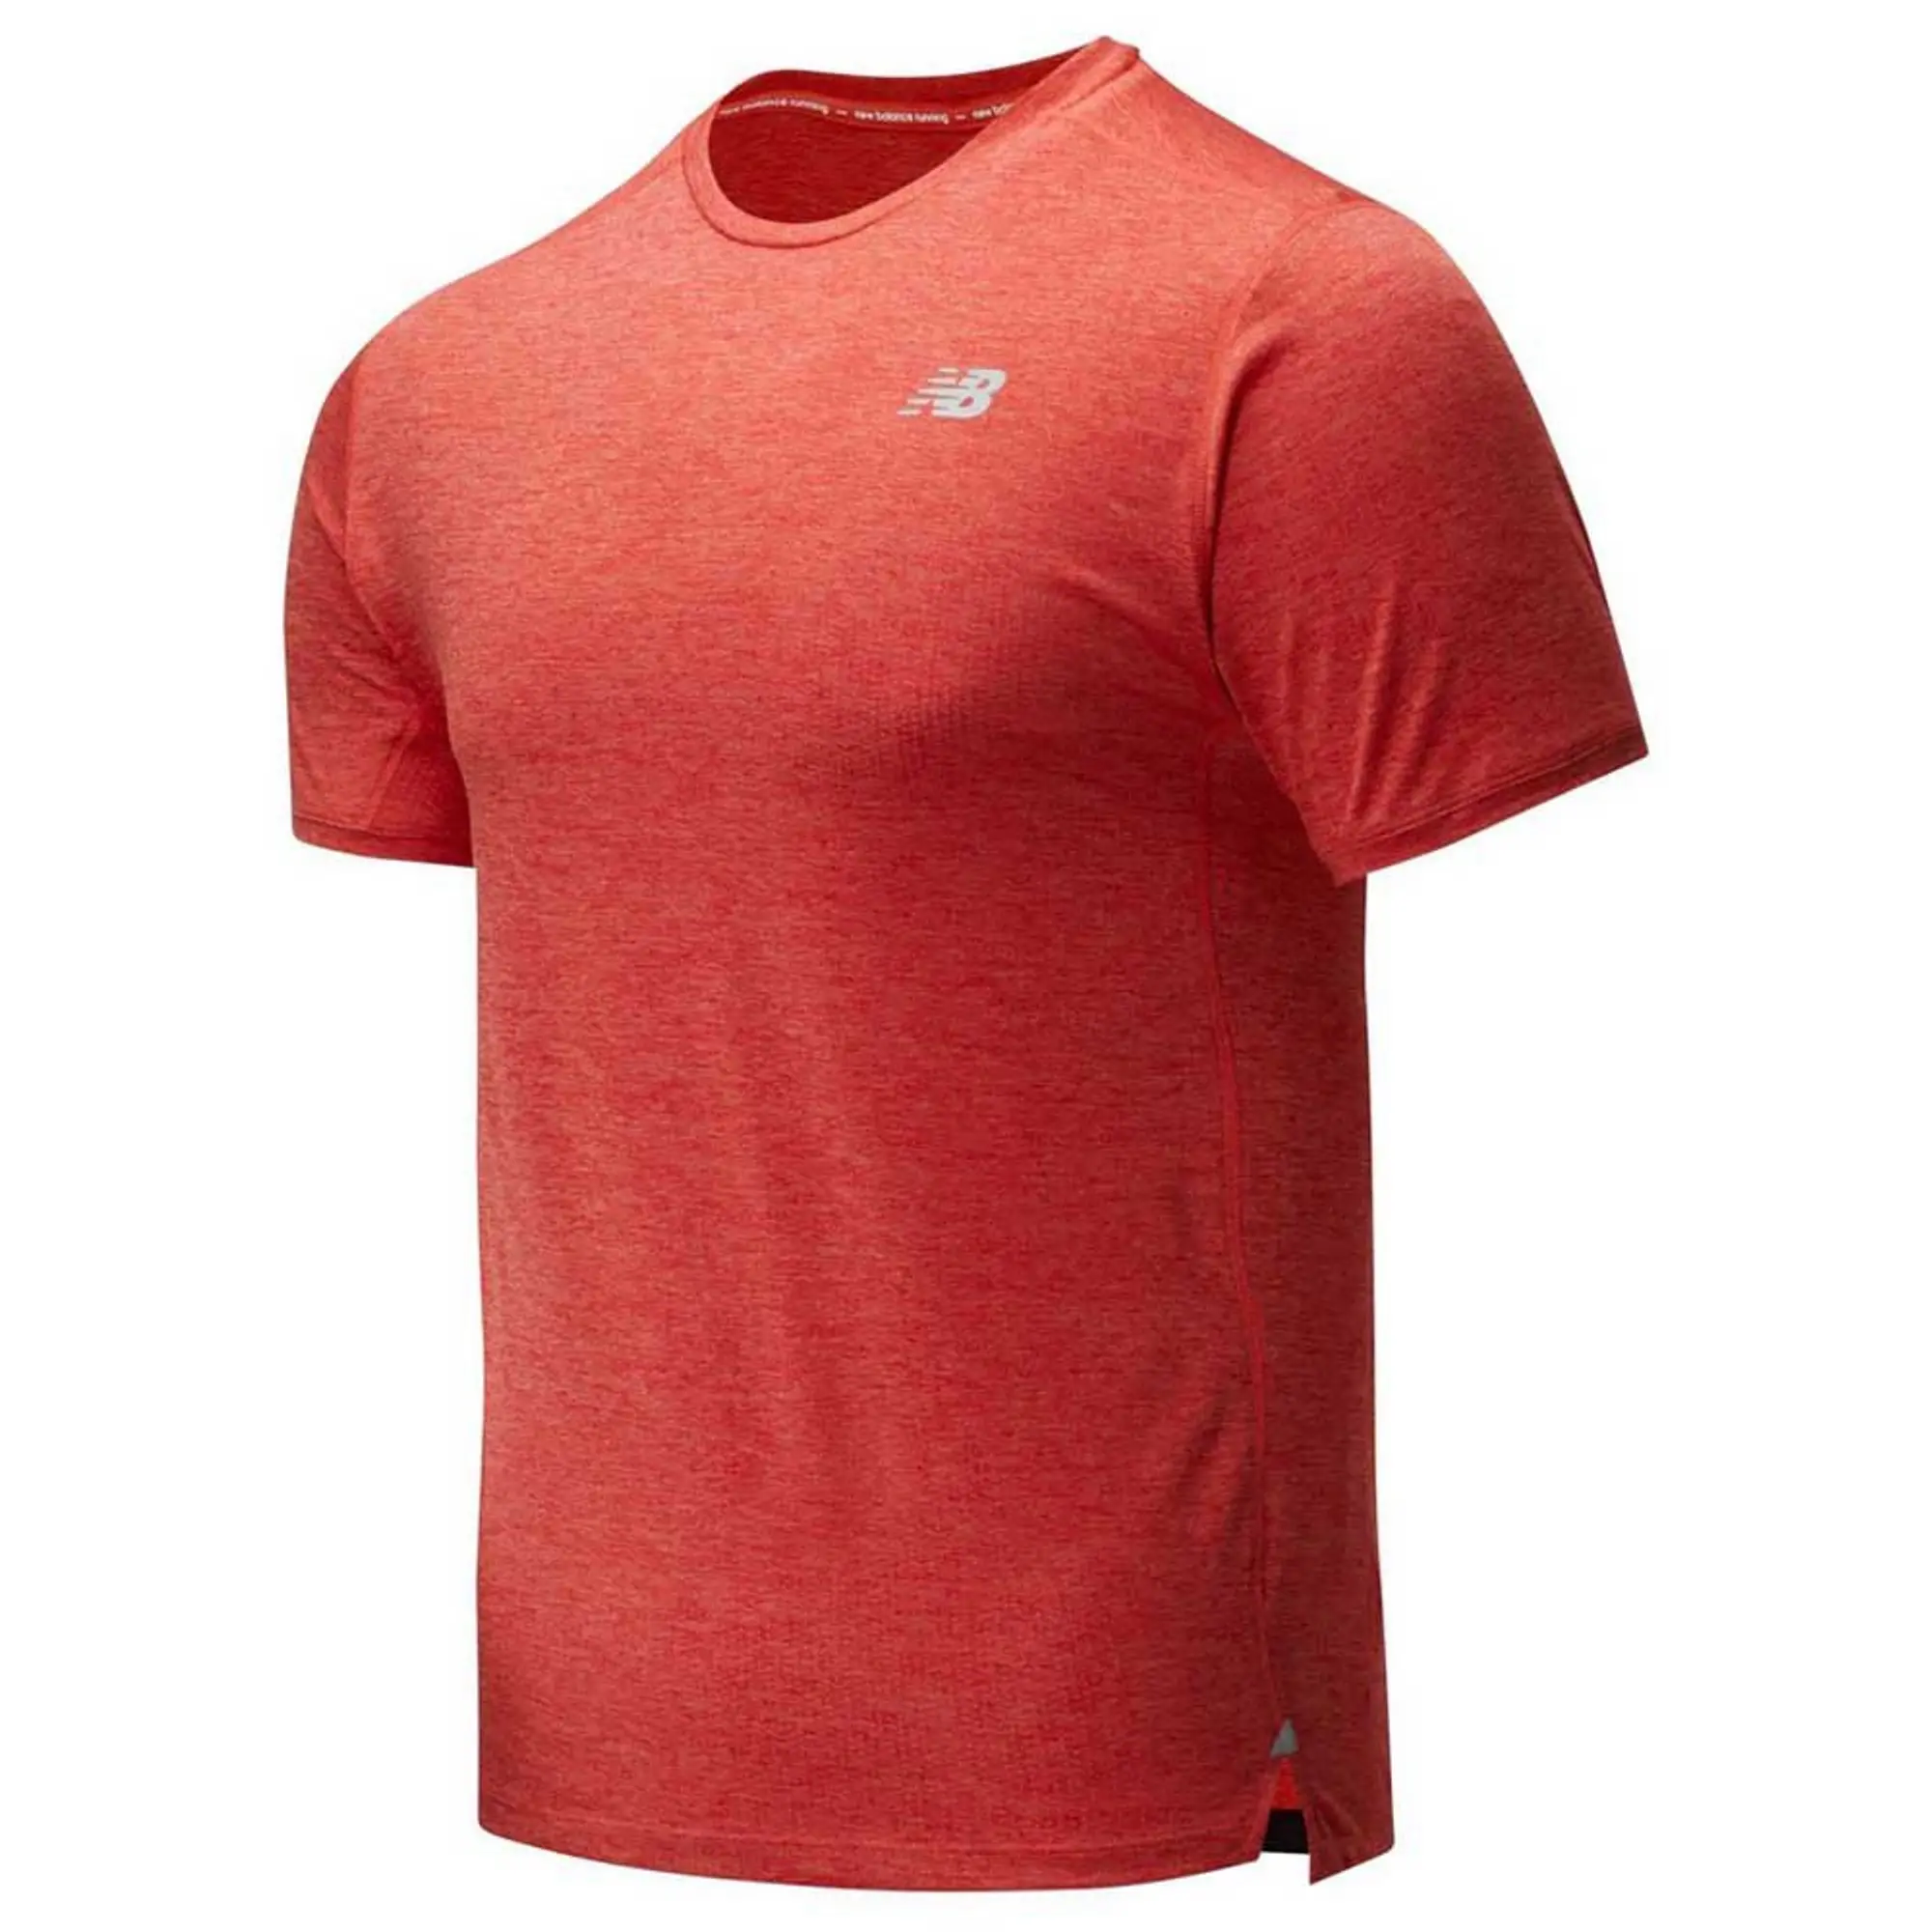 New Balance Impact Run Mens Running T-Shirt - Orange